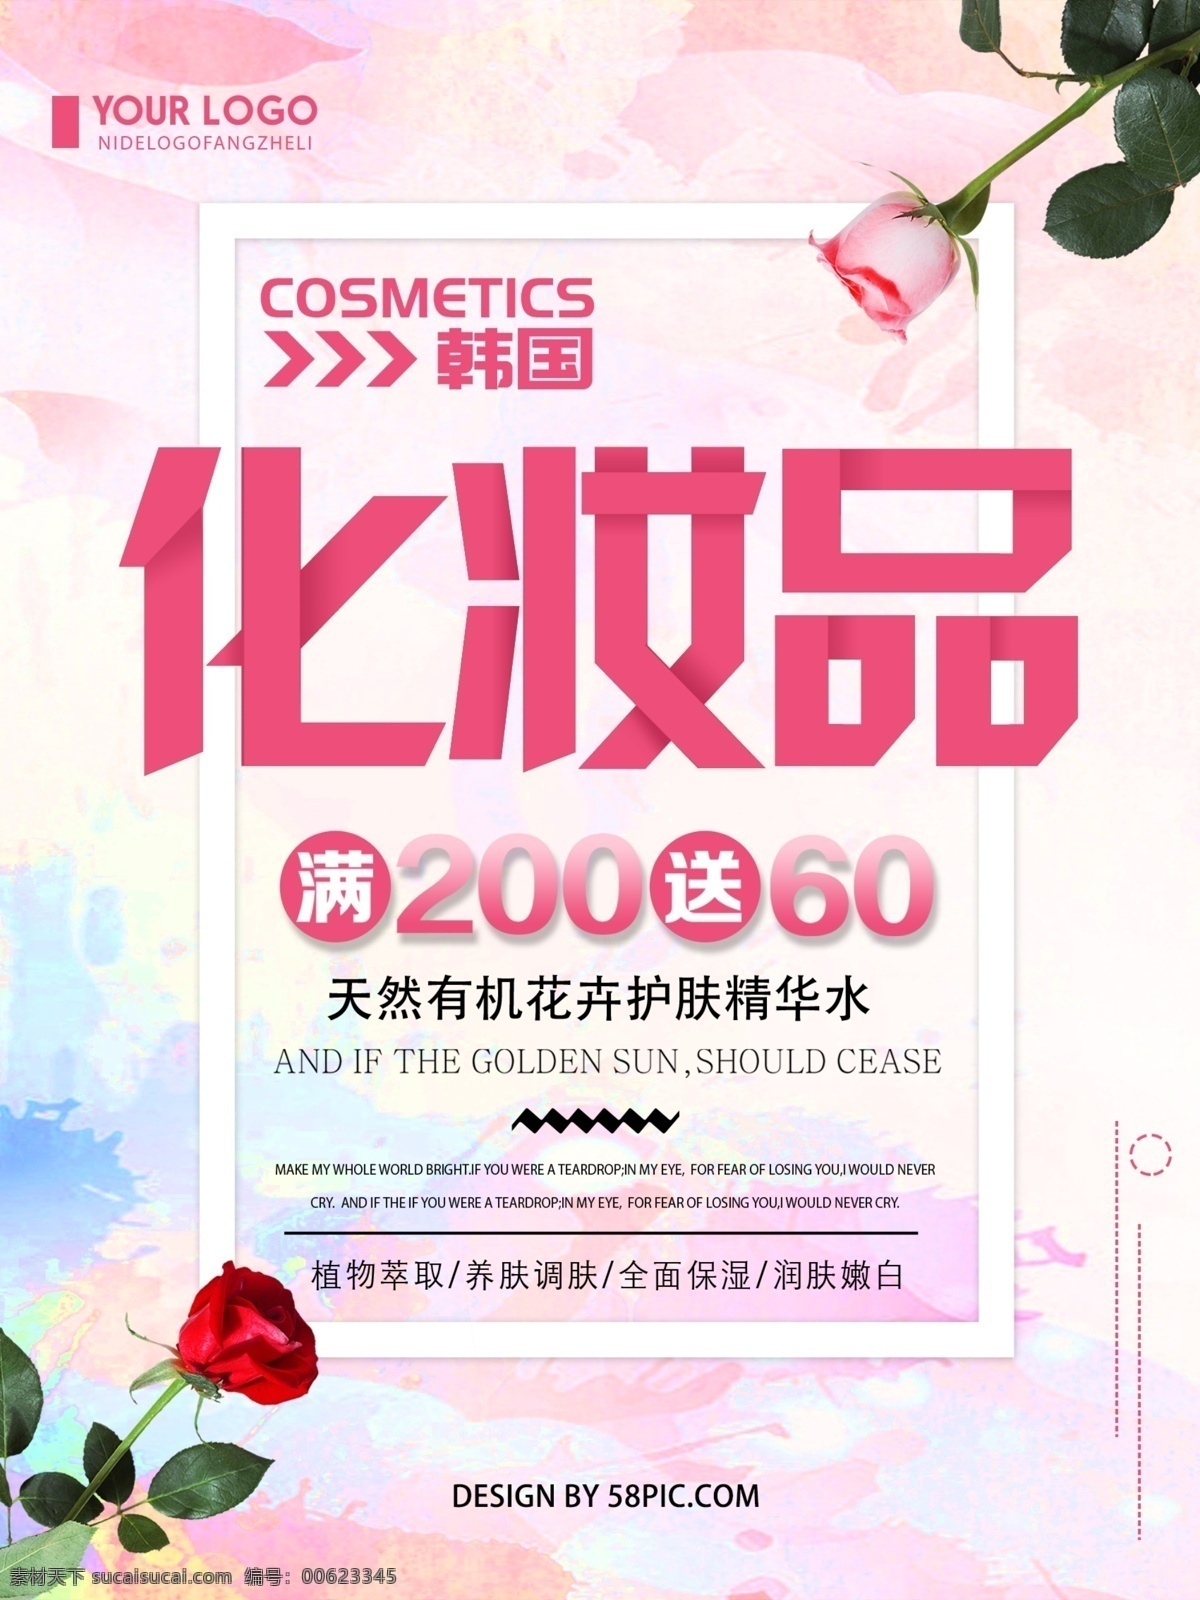 清新 简约 韩国 化妆品 促销 宣传海报 韩国化妆品 化妆品促销 简约促销海报 海报 创意 韩式